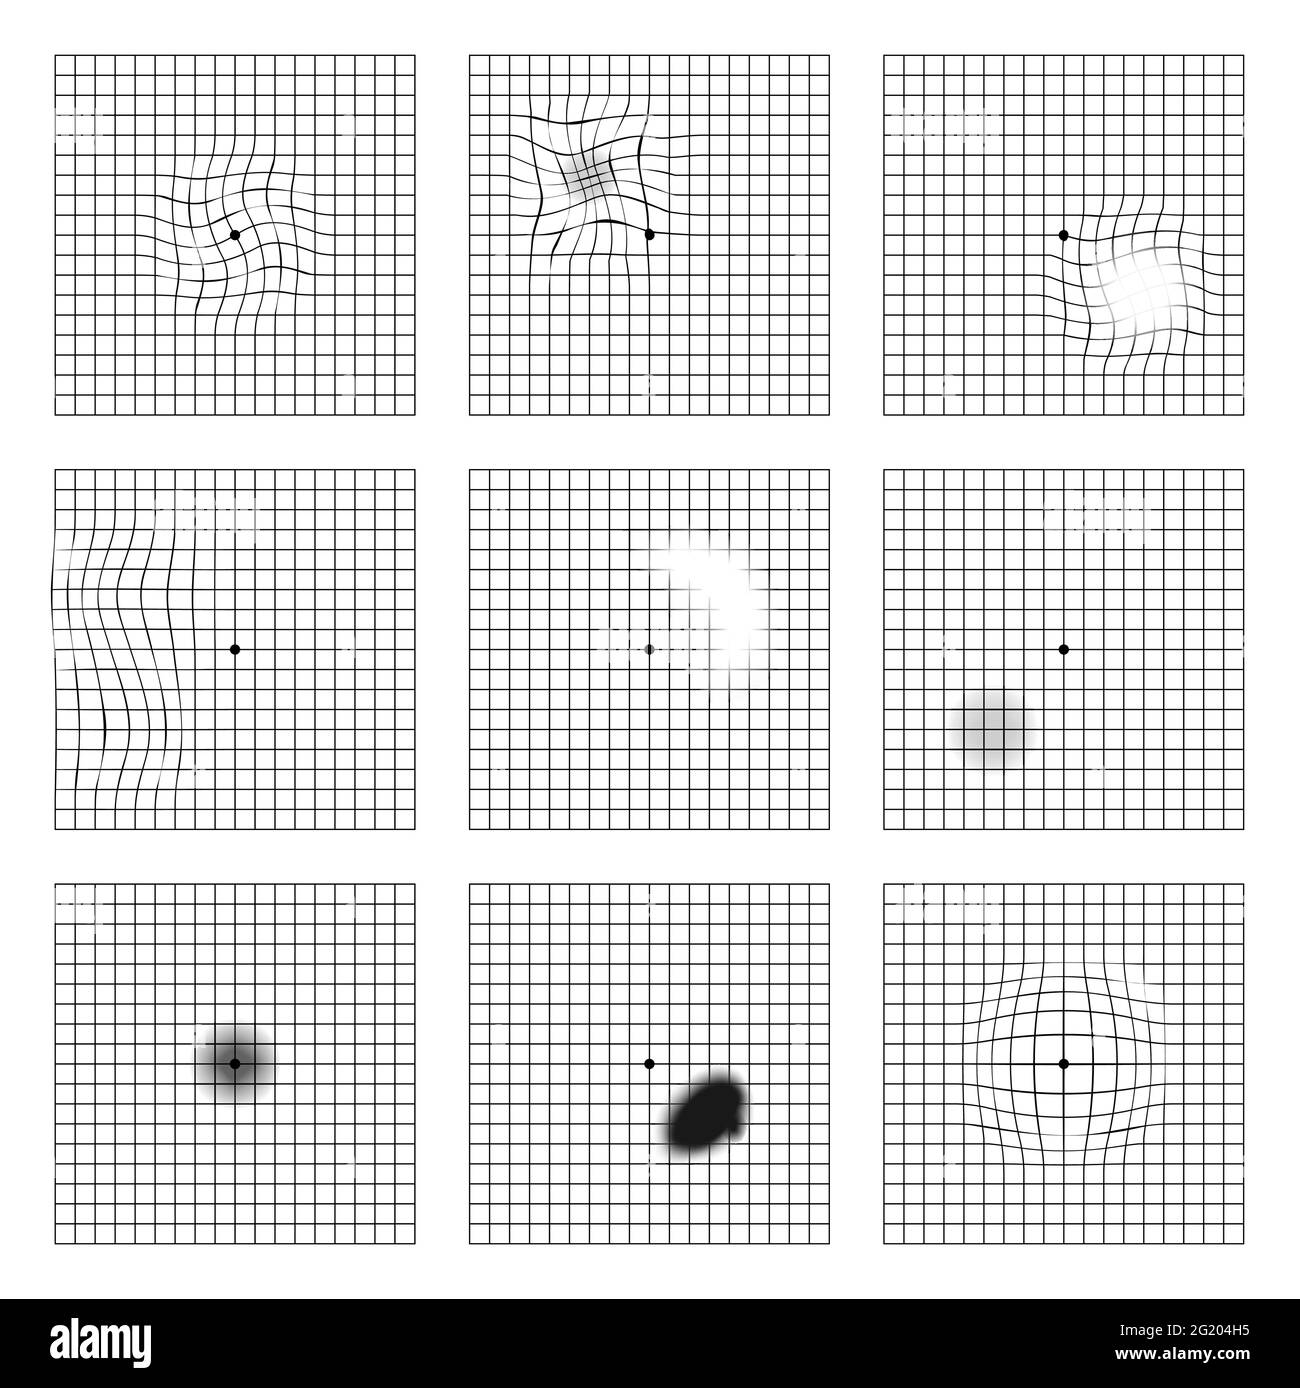 Amsler Augentestraster. Okulistische Vektor druckbare Karte Netzhaut Untersuchung. Raster mit Punkt in der Mitte. Sichtkontrolle. Stock Vektor